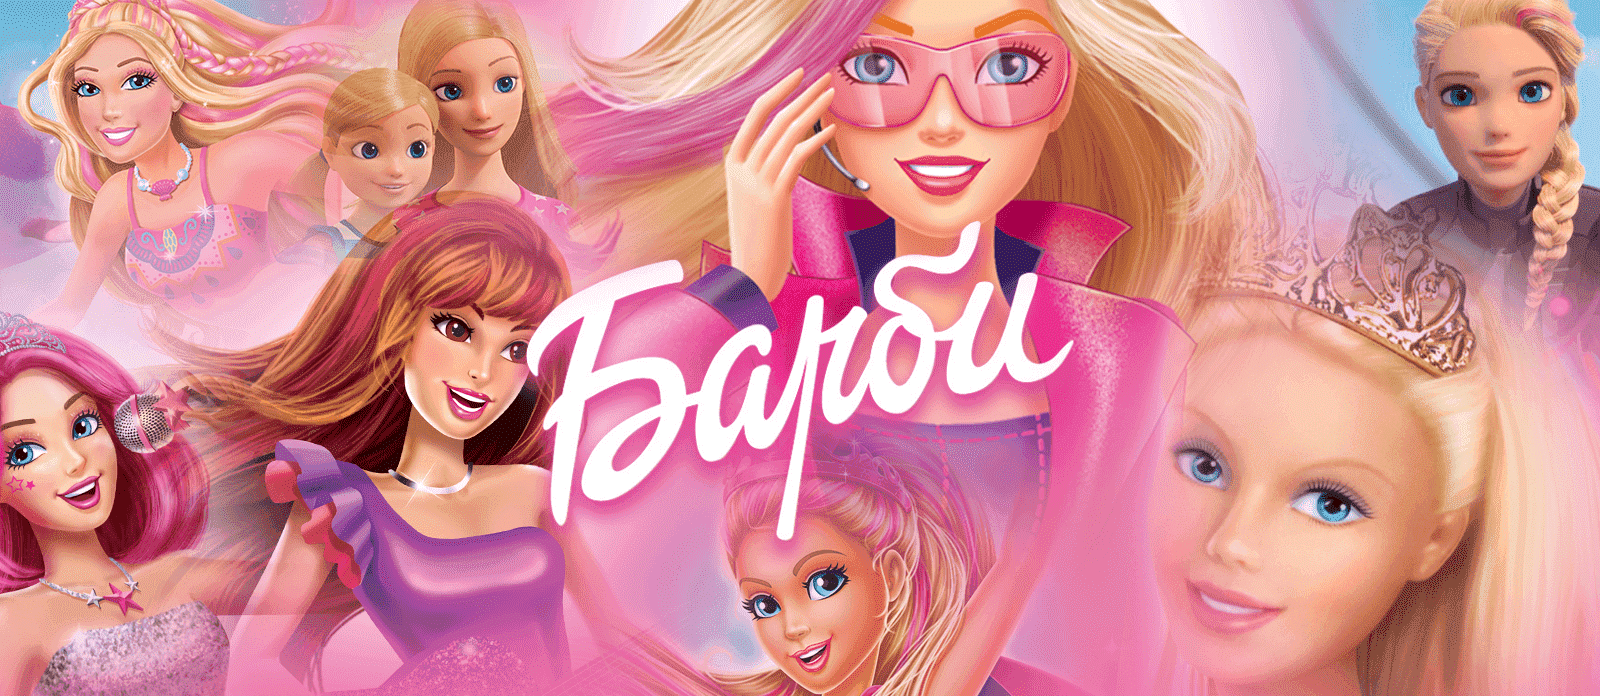 Барби: Виртуальный мир